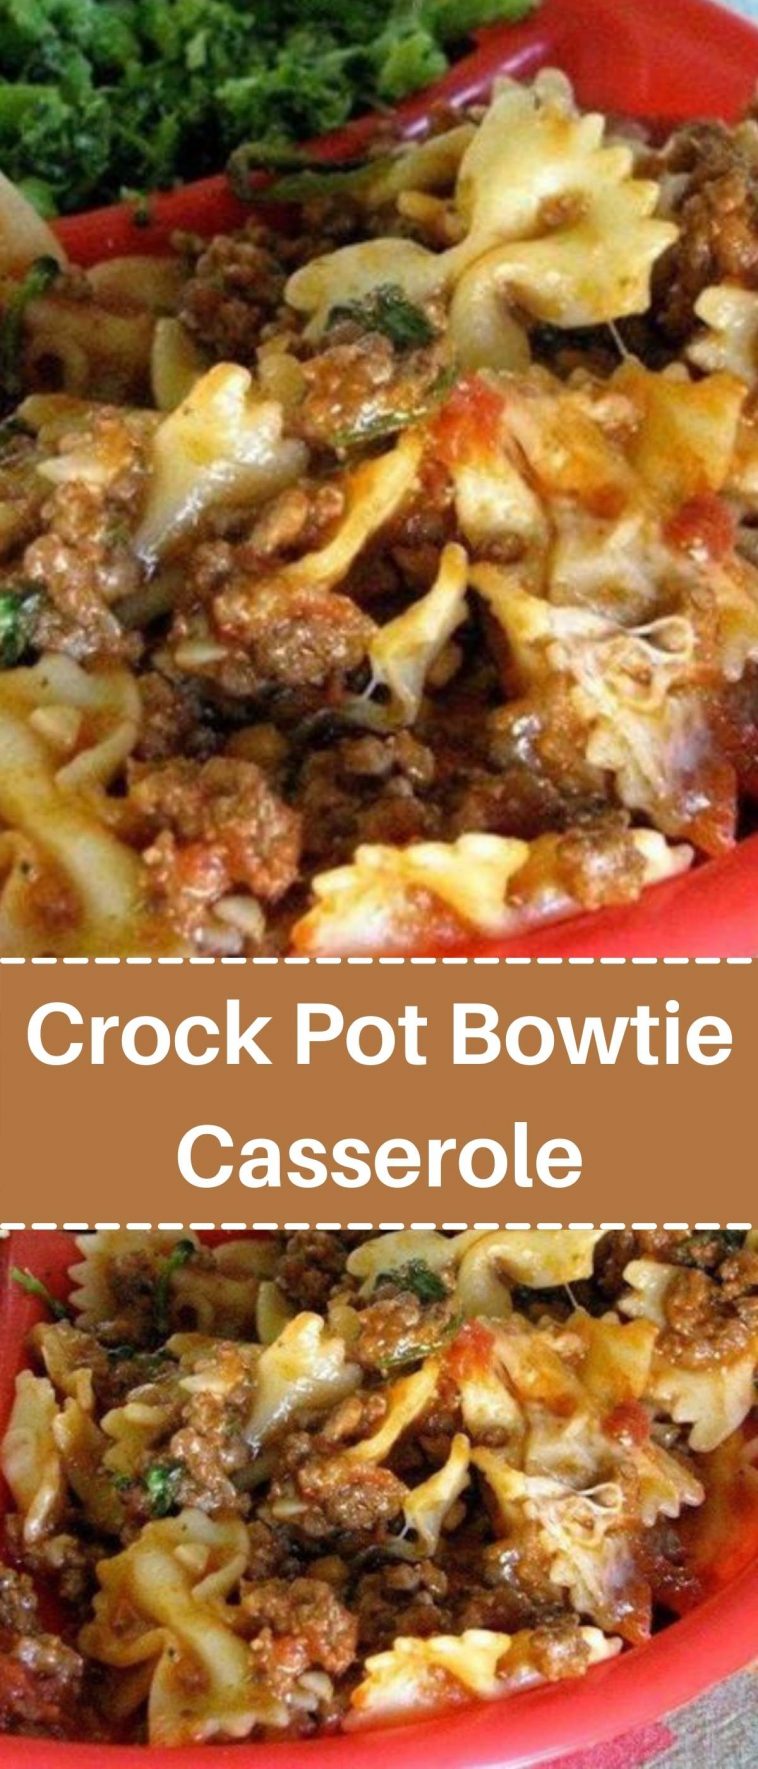 Crock Pot Bowtie Casserole